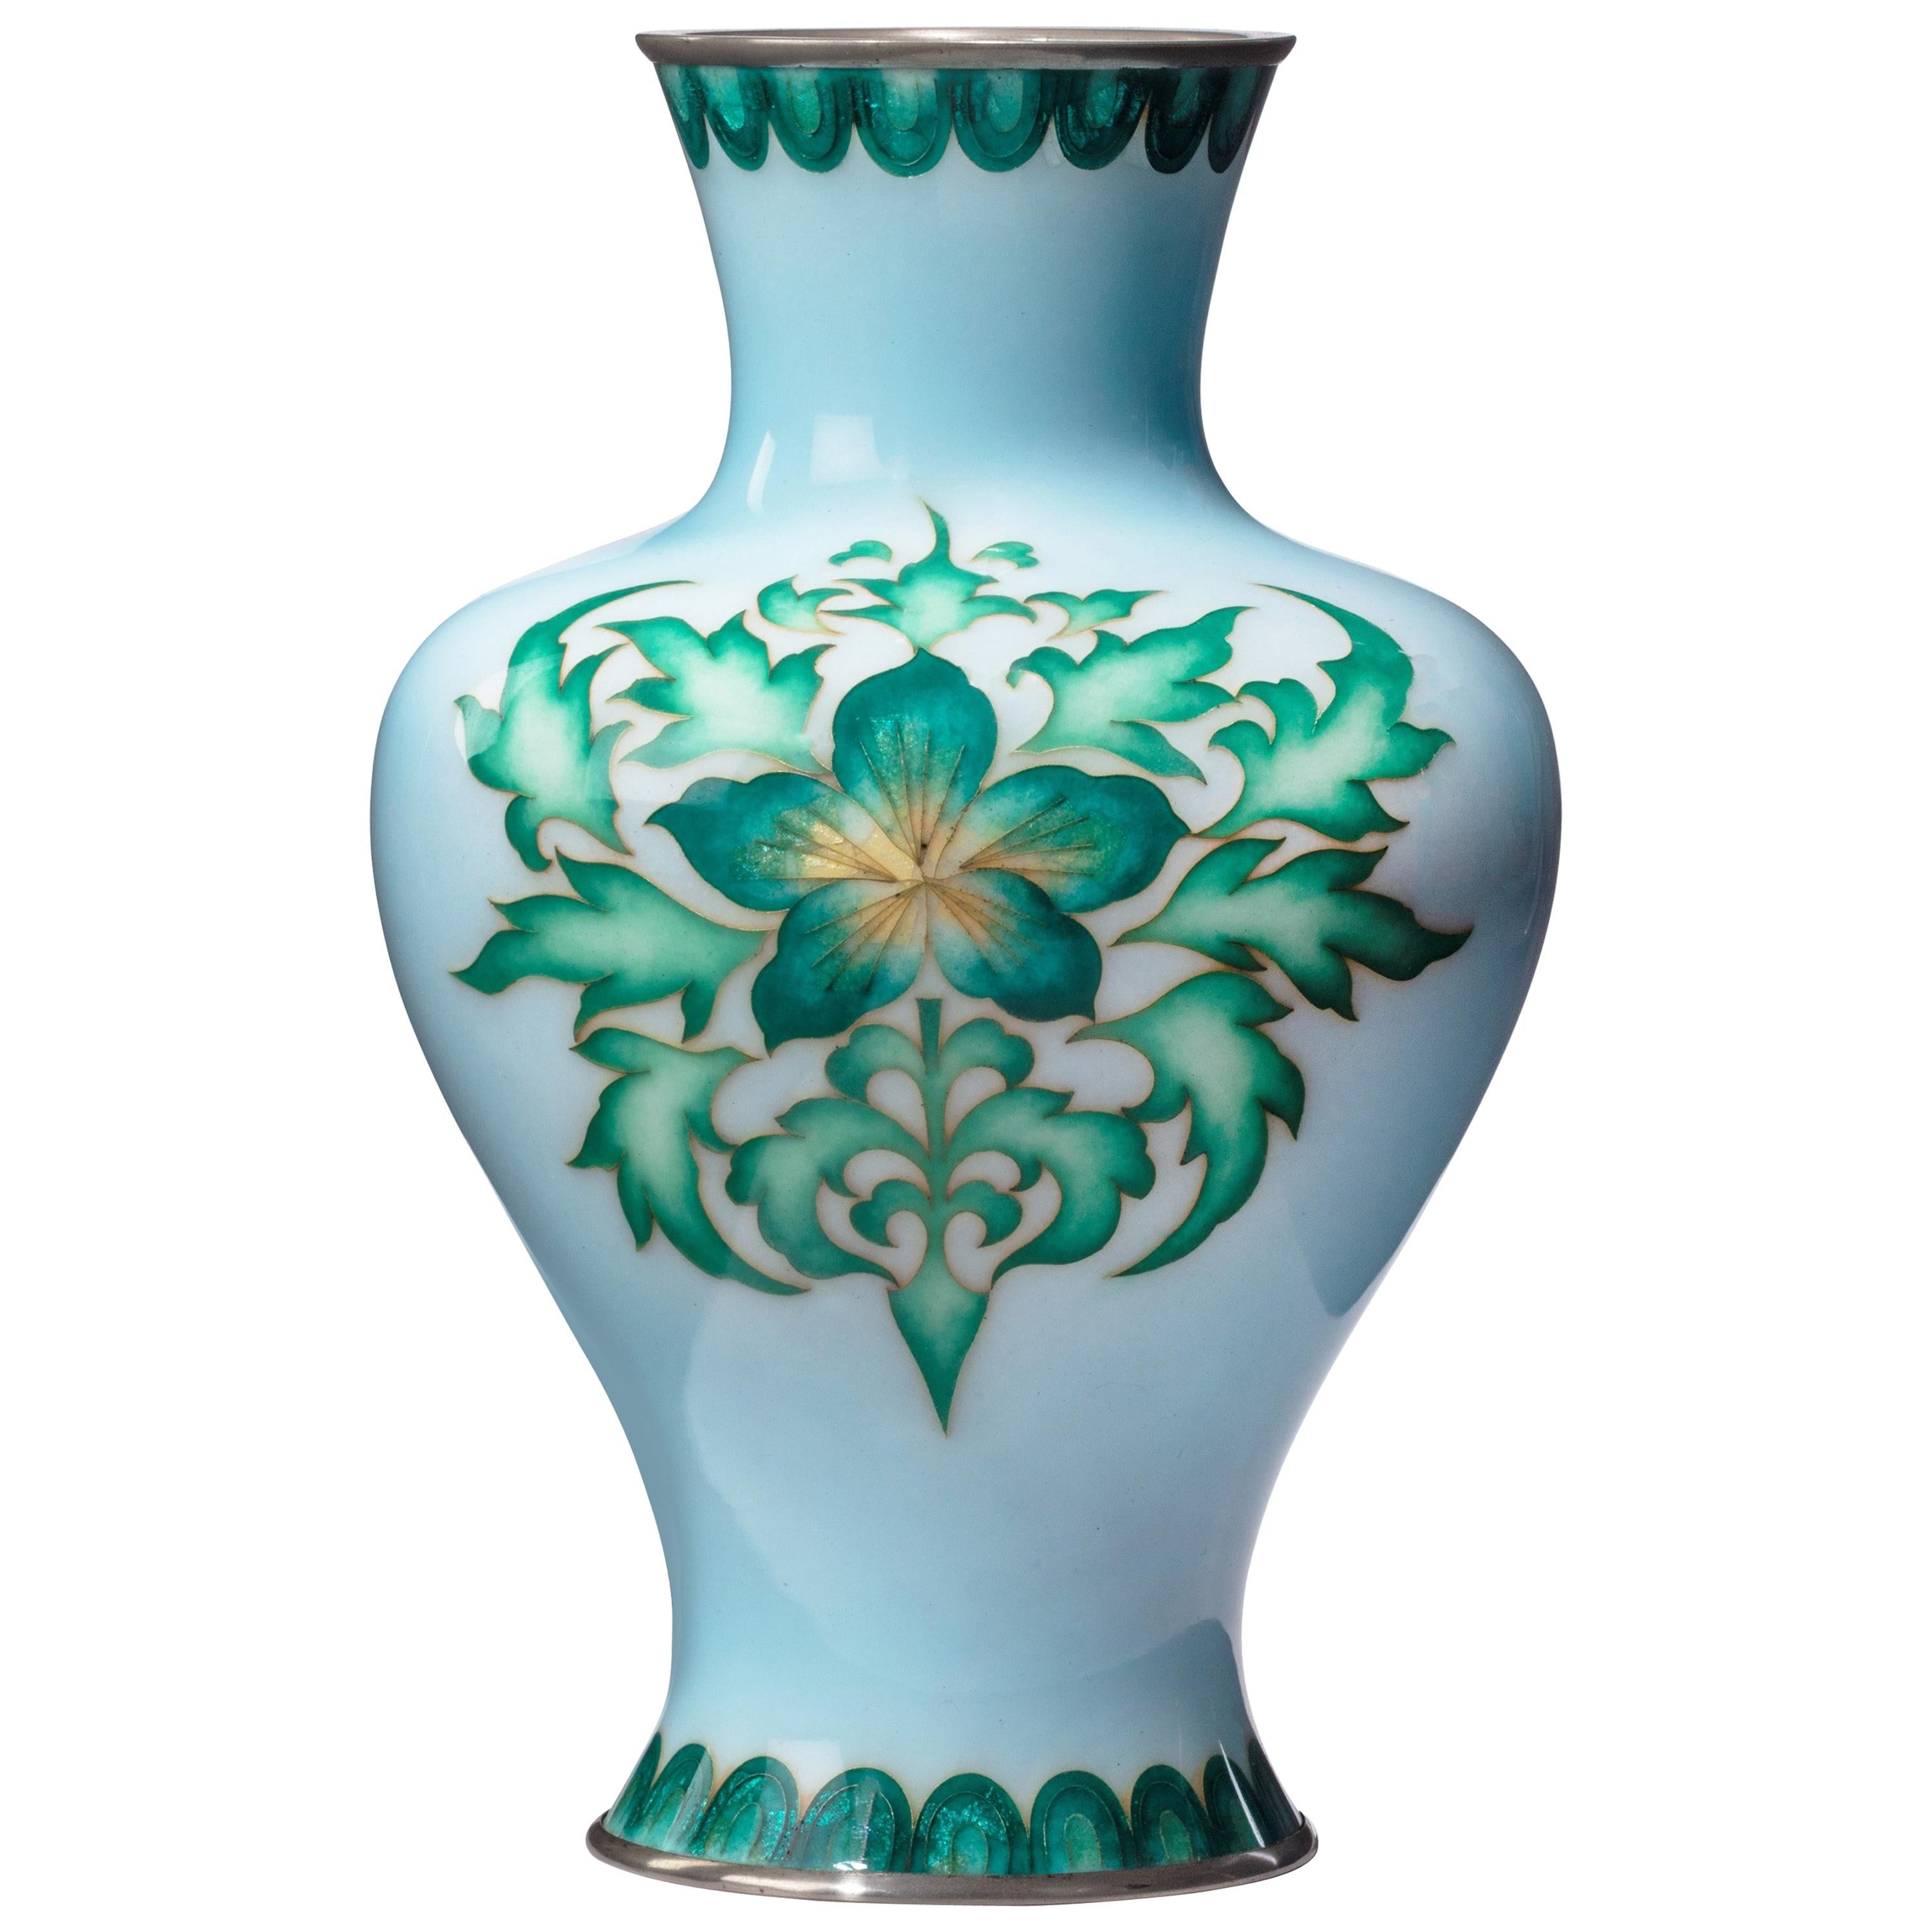 Showa Period Pale Blue Cloisonné Vase by Tamura